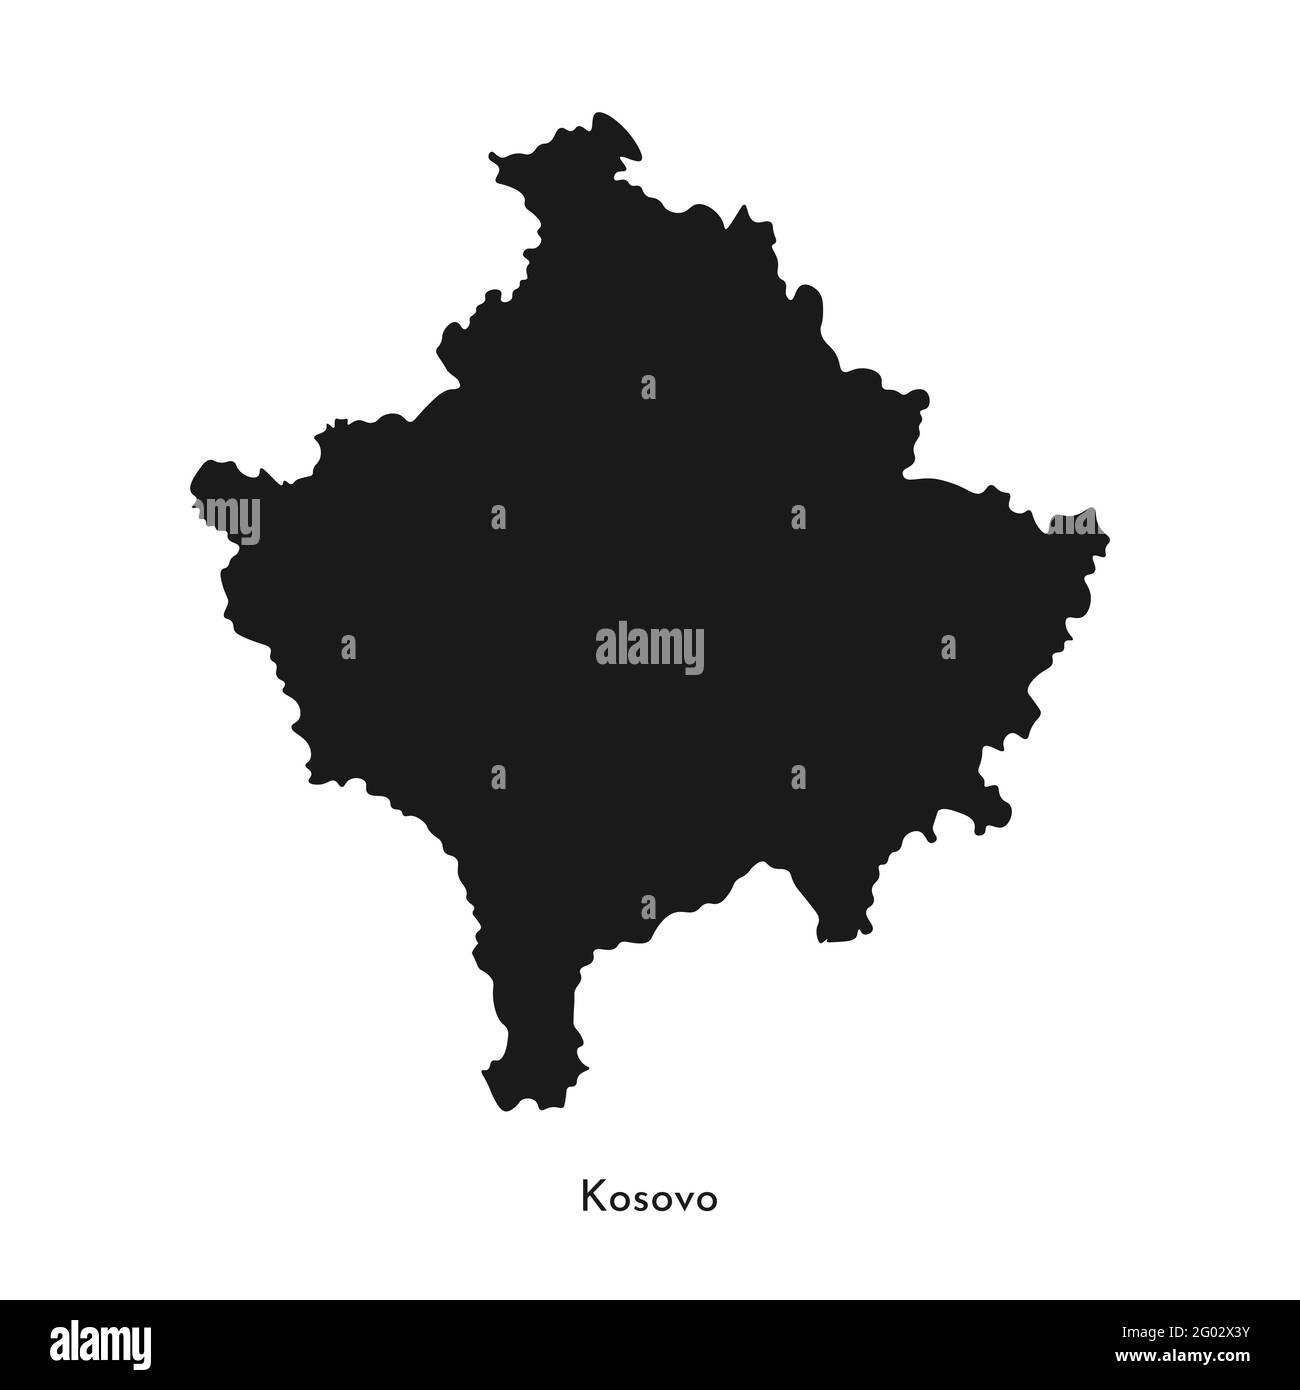 Icône d'illustration simplifiée isolée vectorielle avec silhouette noire de la carte du Kosovo. Arrière-plan blanc. Illustration de Vecteur